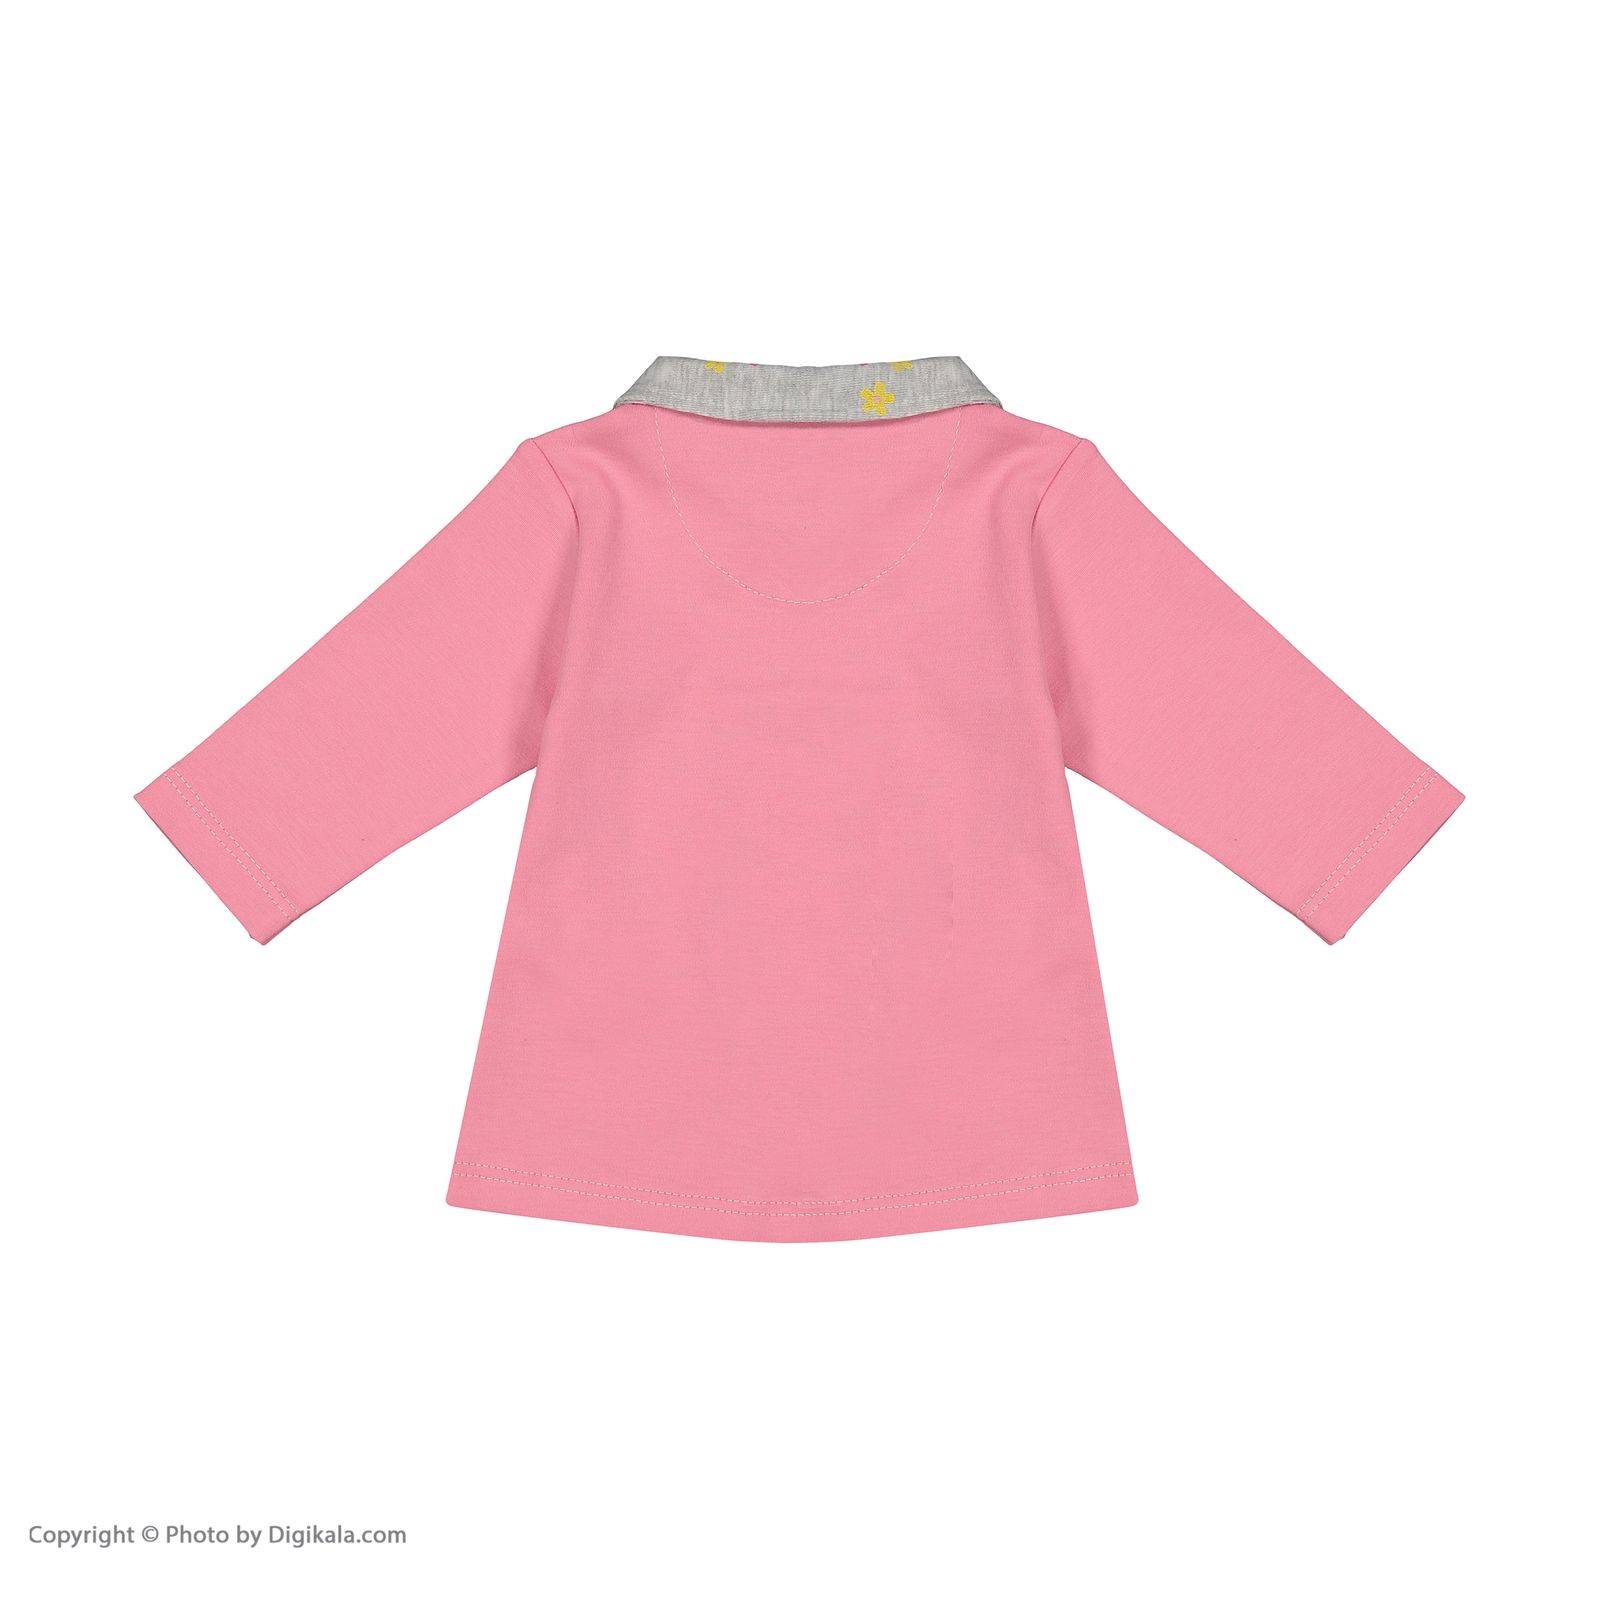 ست 11 تکه لباس نوزادی دخترانه نیلی مدل roza545 -  - 10